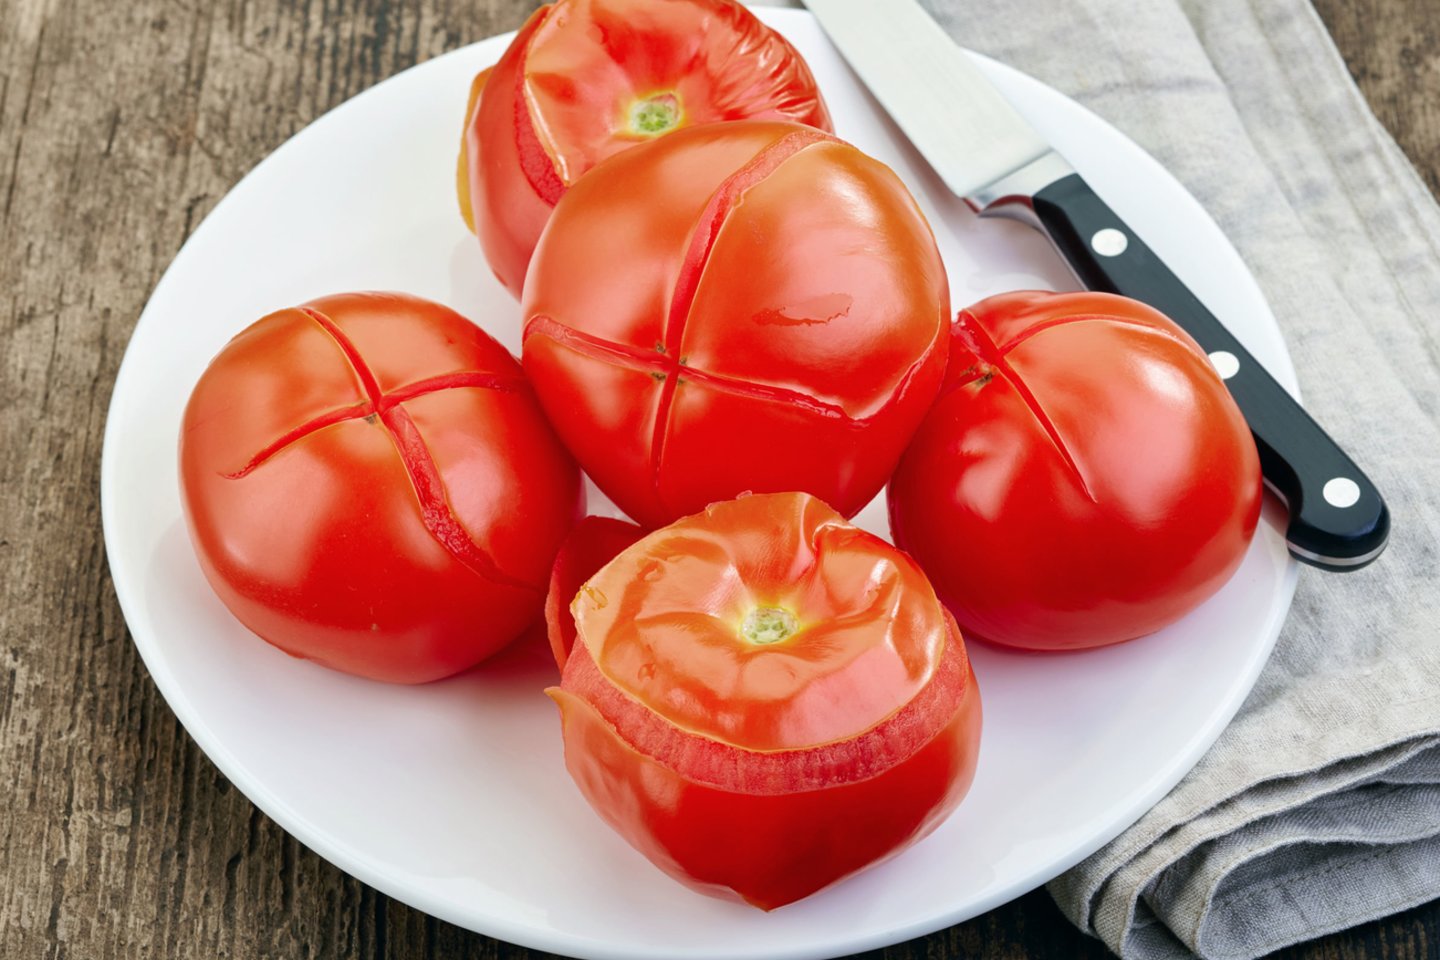  Verdančiu vandeniu nuplikius pomidorus odelė lengvai nusilupa.<br> 123rf.com 